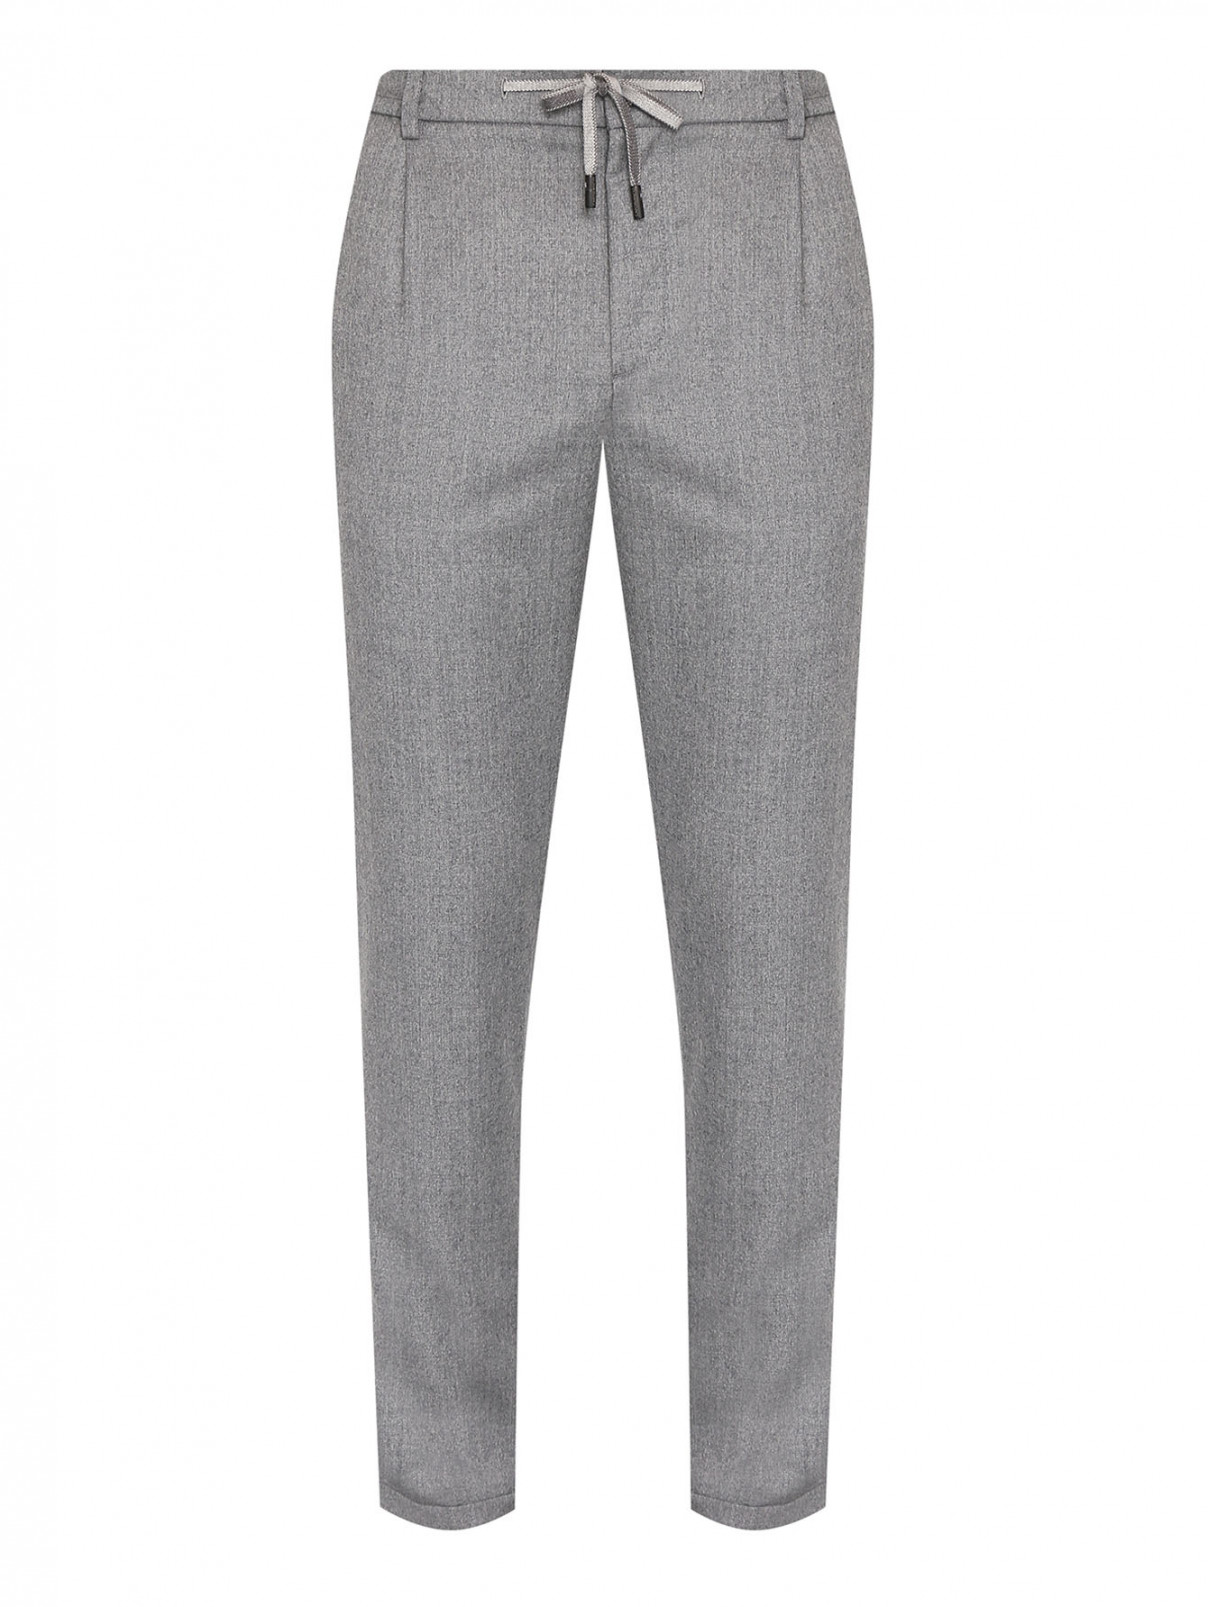 Однотонные брюки из шерсти на резинке Capobianco  –  Общий вид  – Цвет:  Серый